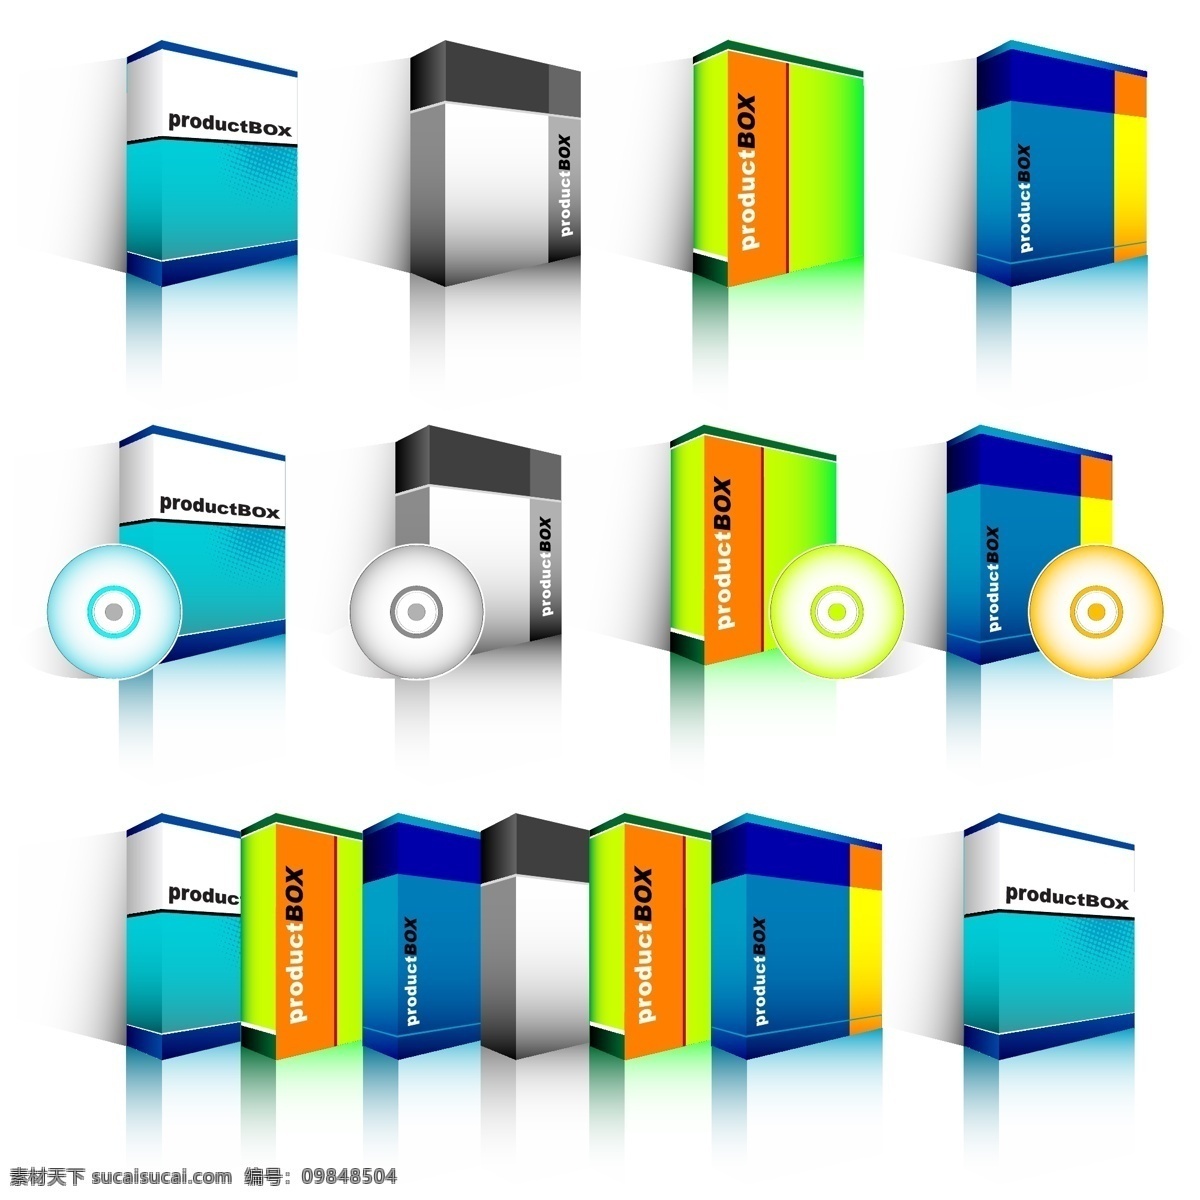 软件 包装 模板 矢量 cd 包装盒 光盘 盒子 矢量素材 辉记 矢量图 其他矢量图